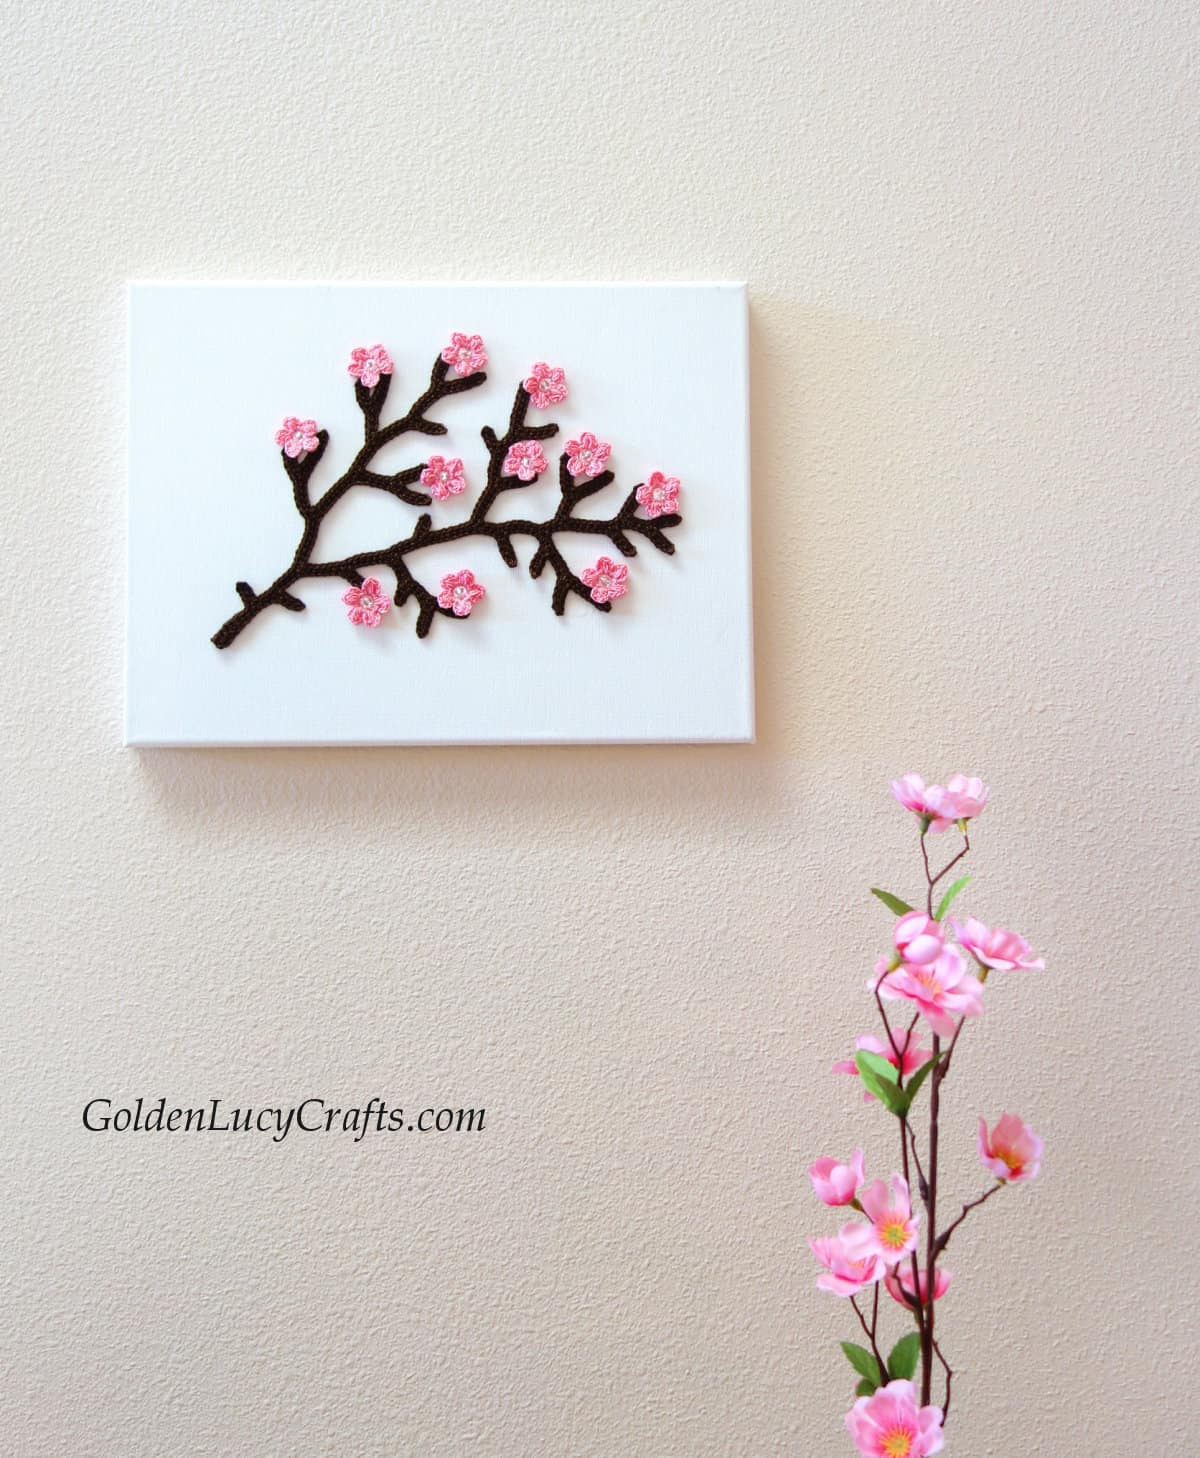 Crochet wall art - blossoming spring tree branch.